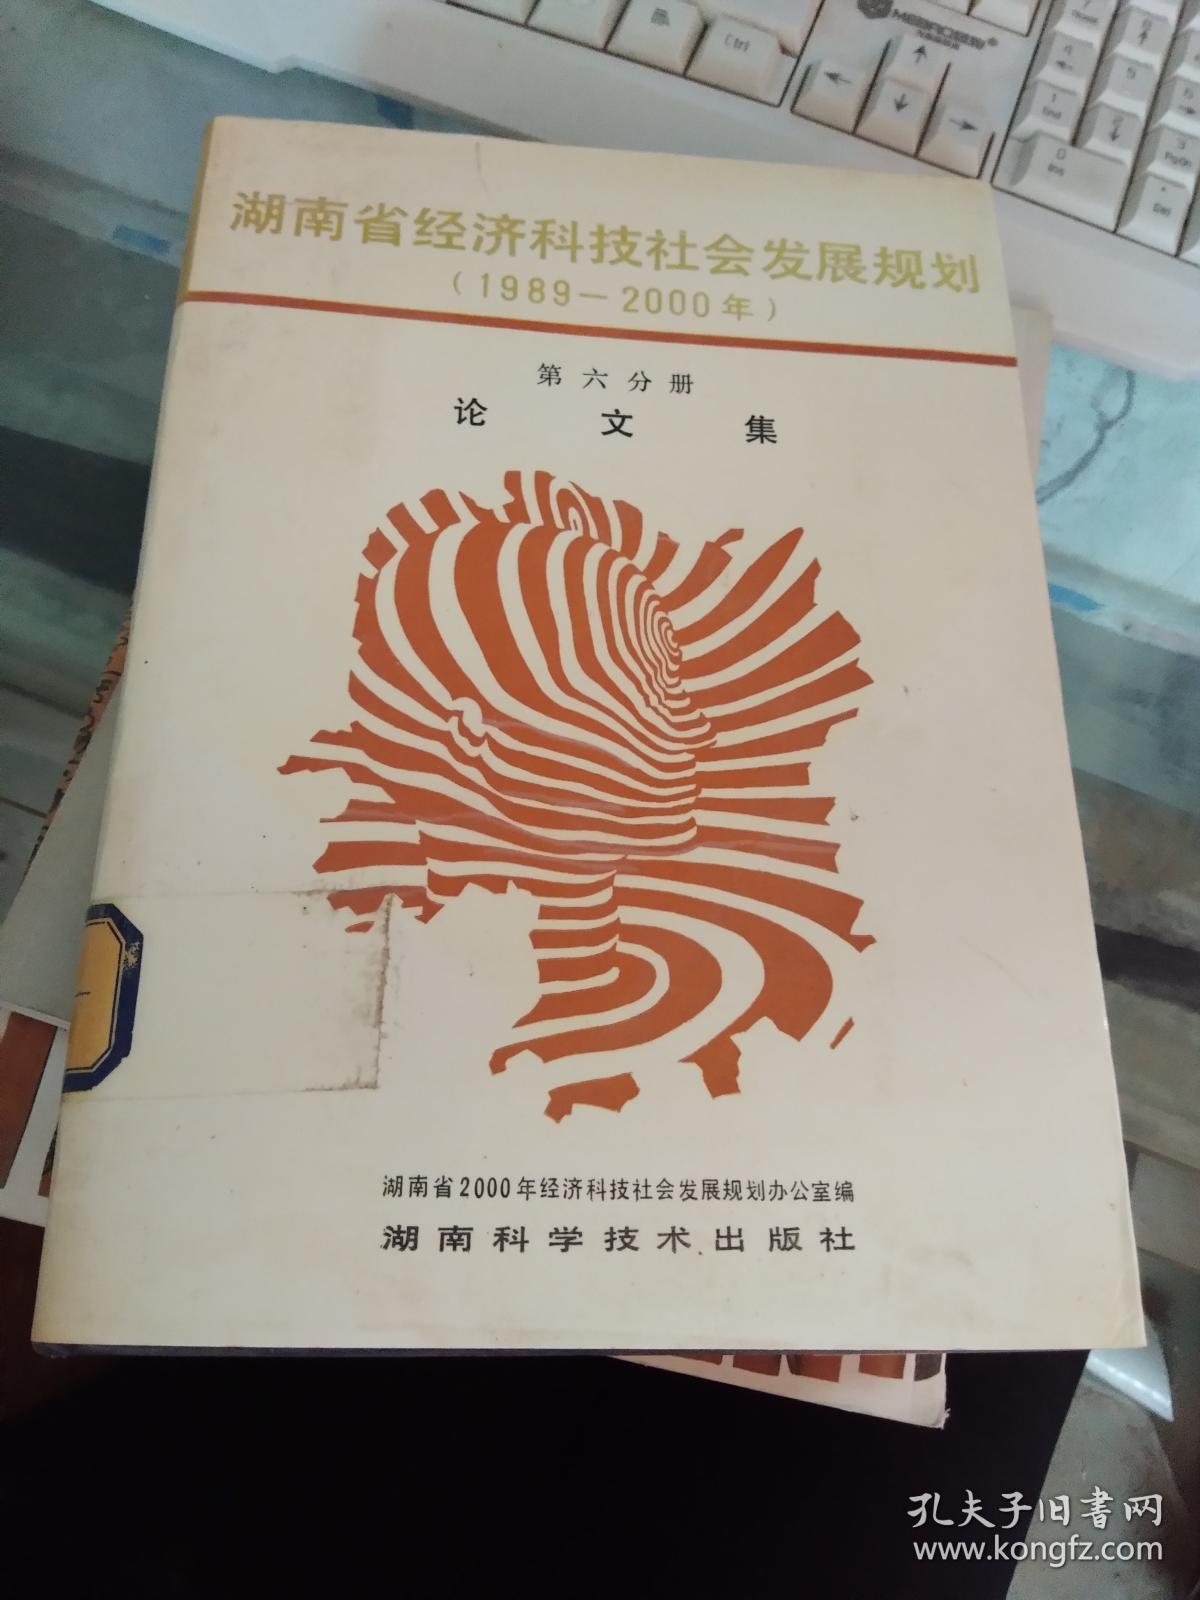 湖南省经济科技社会发展规划(1989-2000年)第